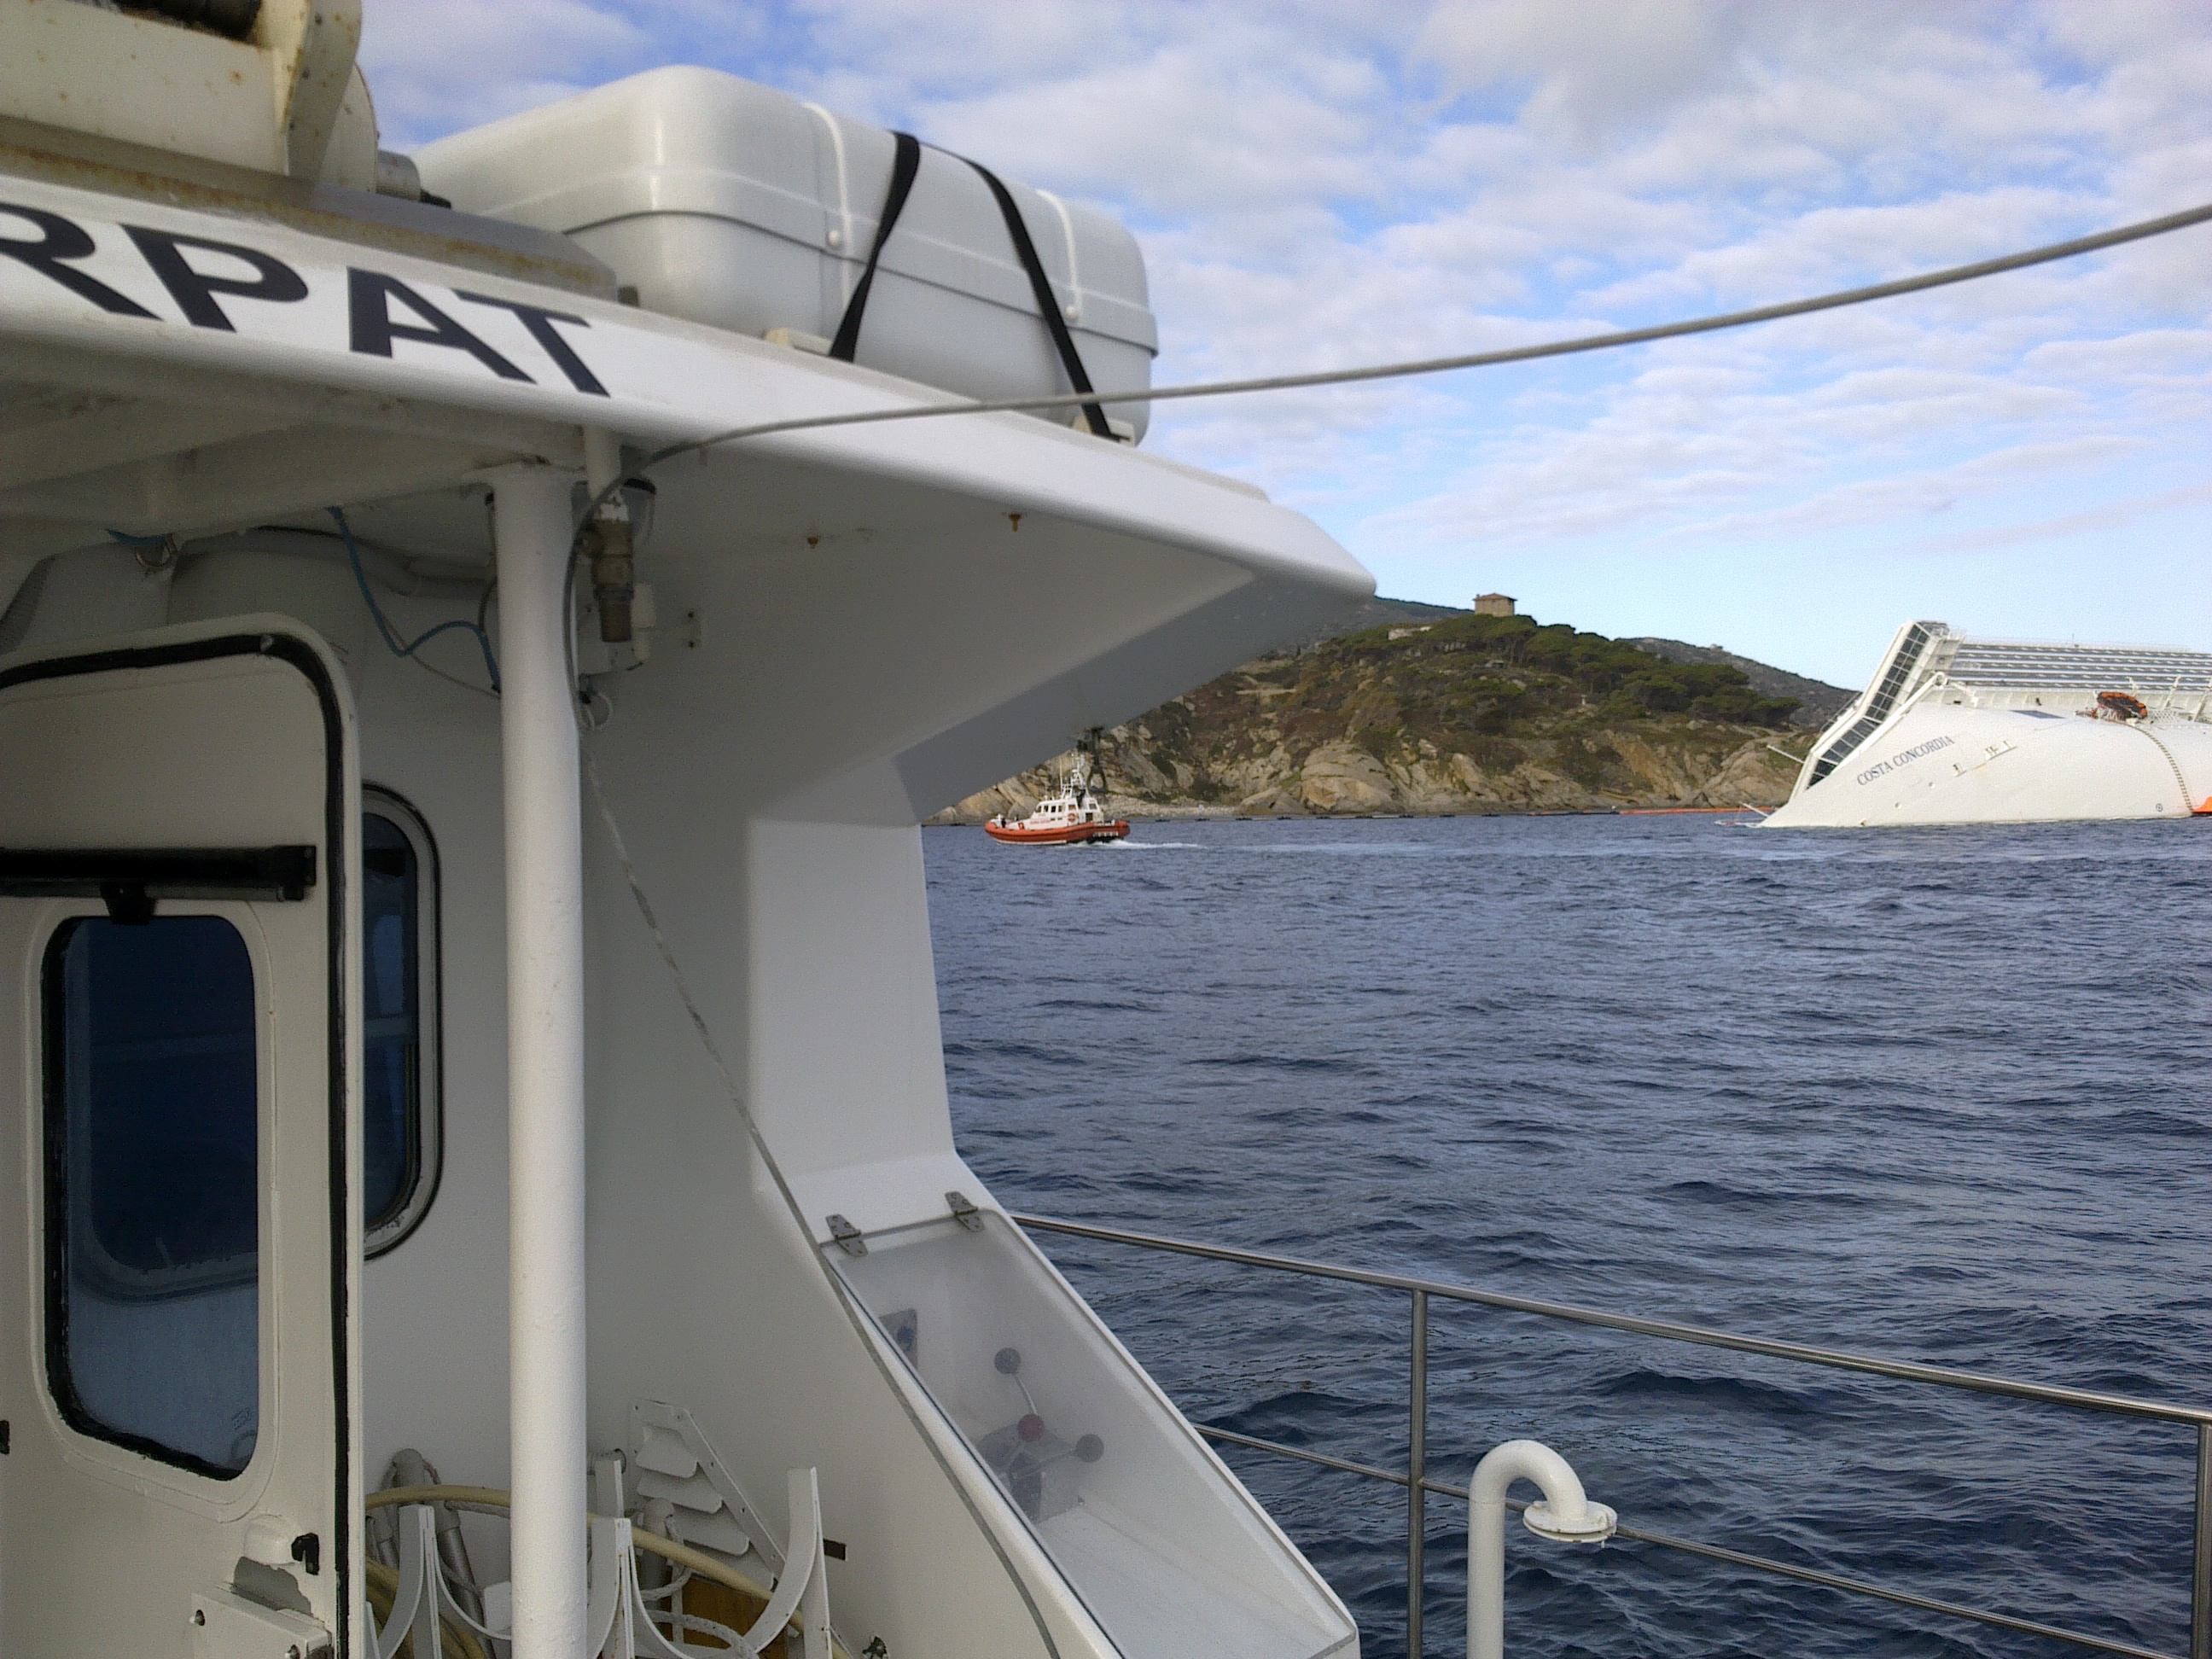 Monitoraggio Costa Concordia - aggiornamento del 24 gennaio 